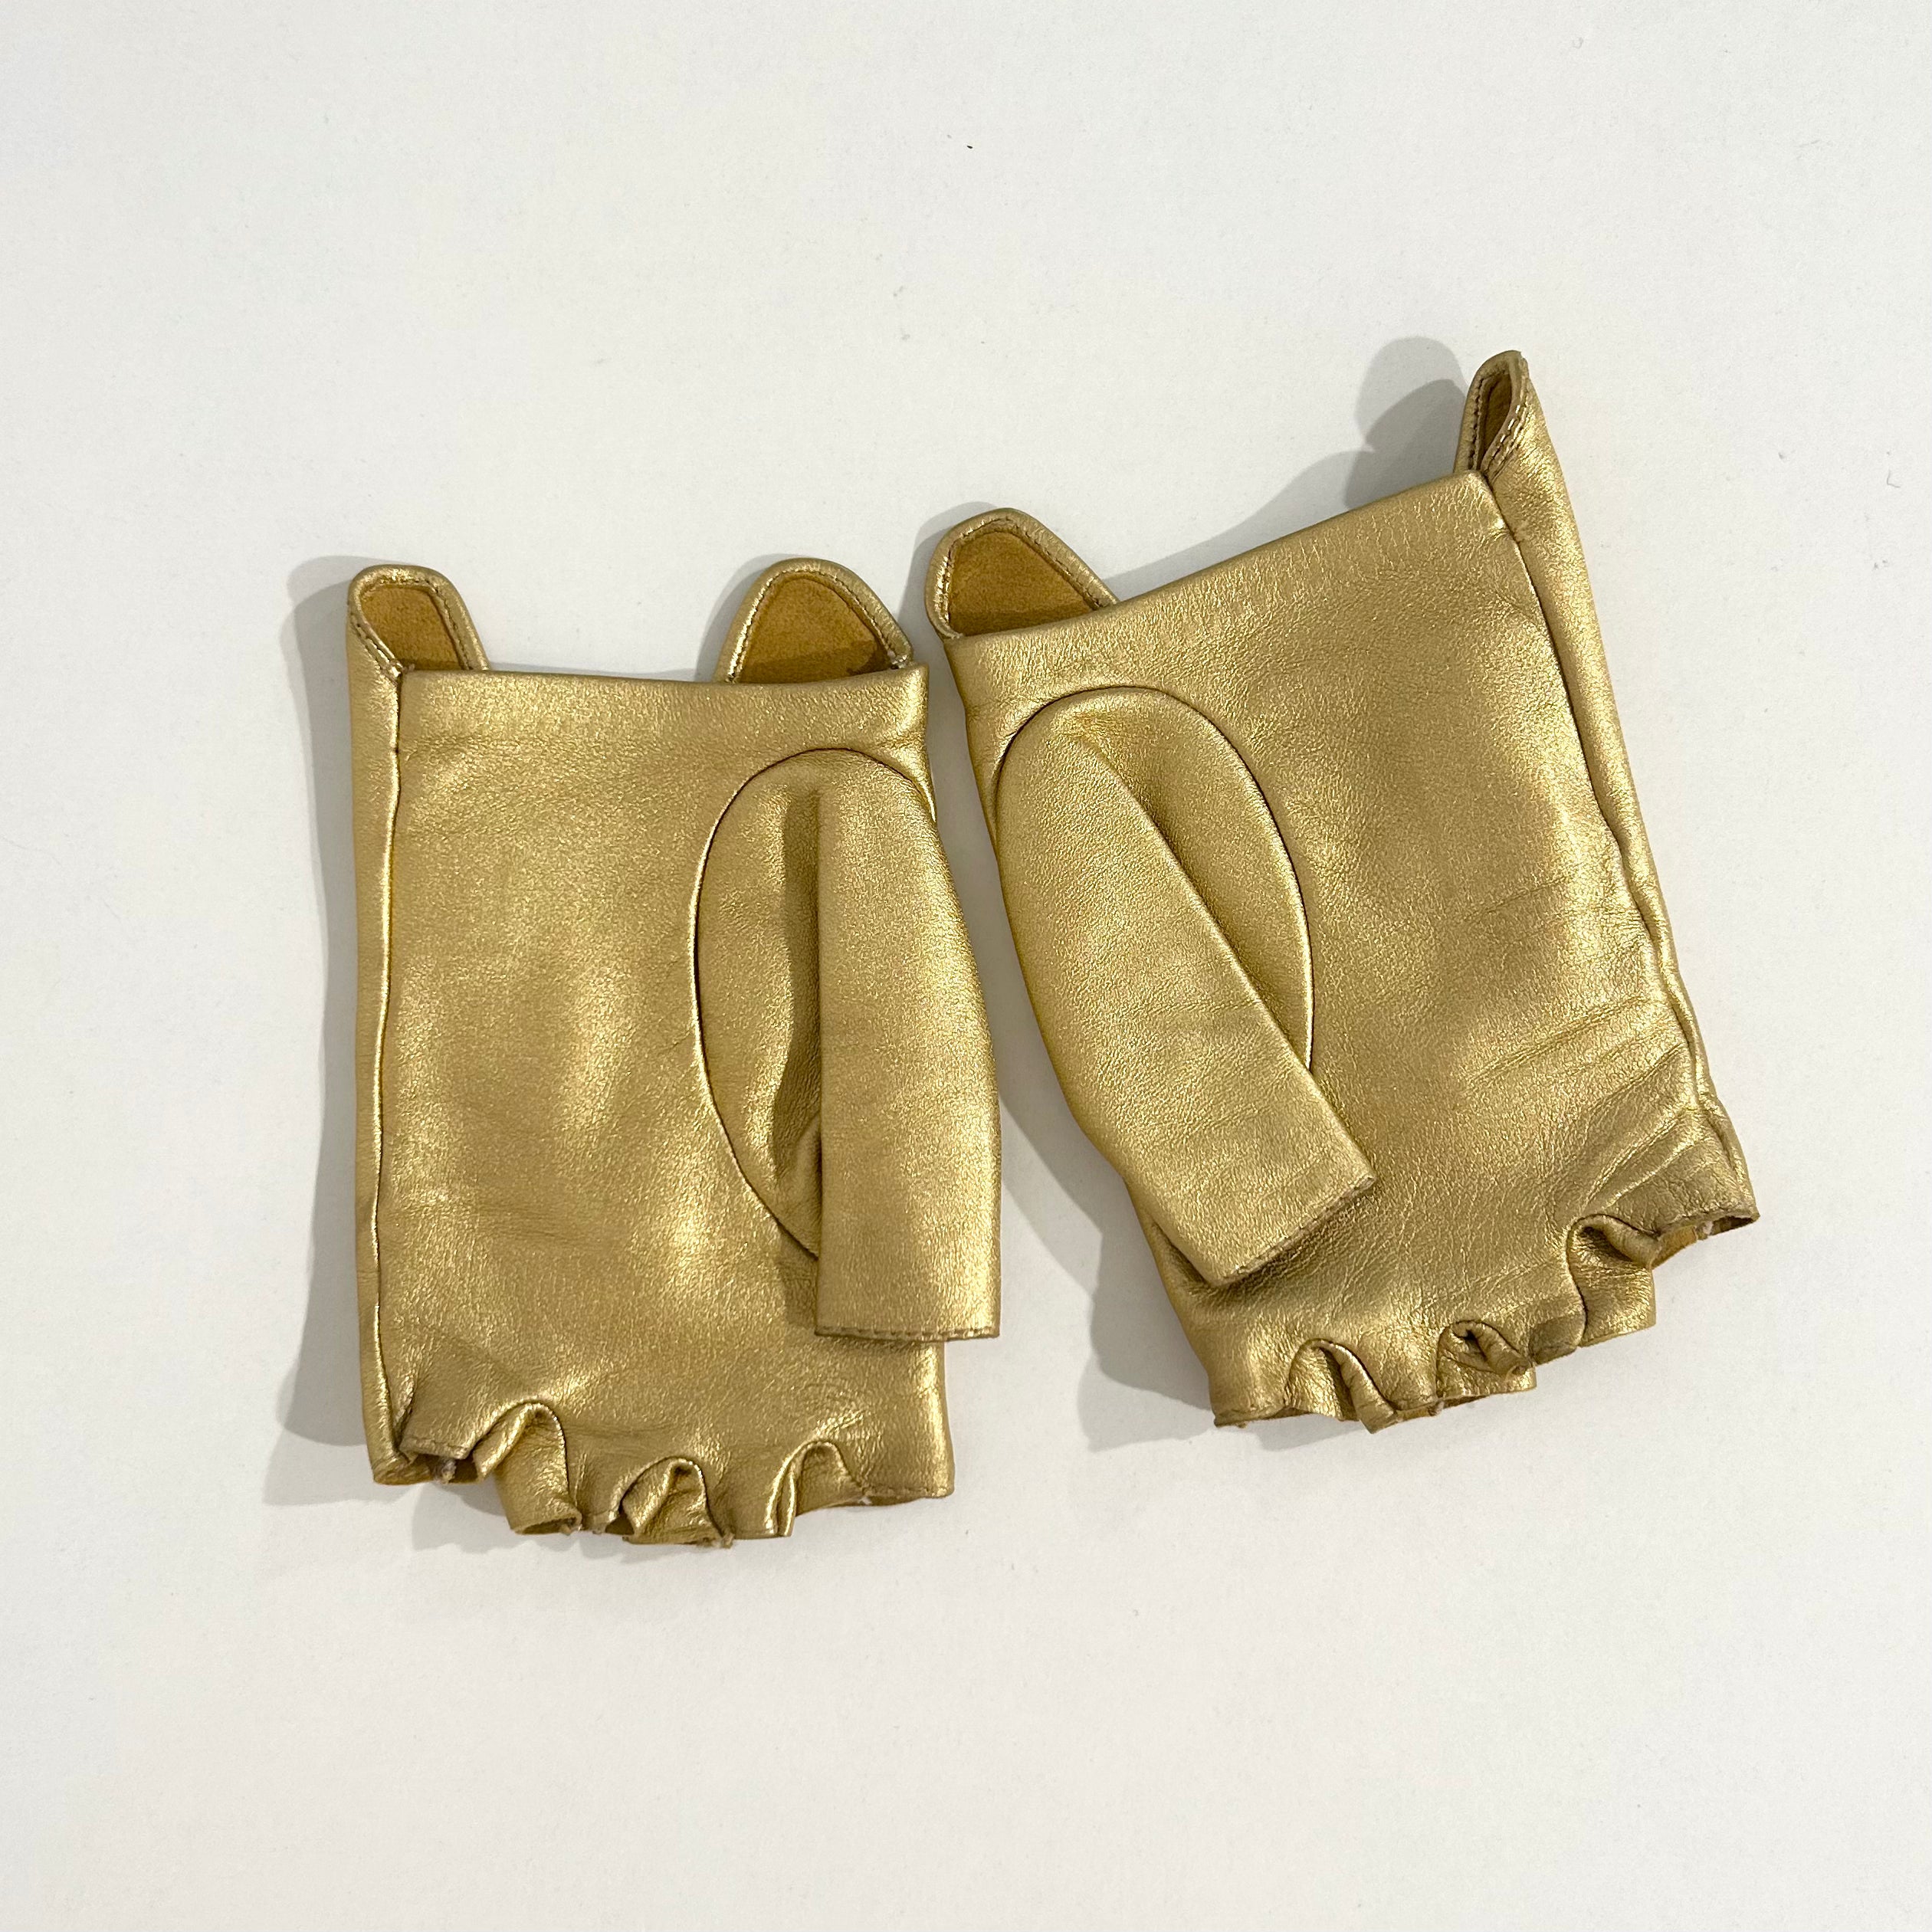 fingerless chanel gloves